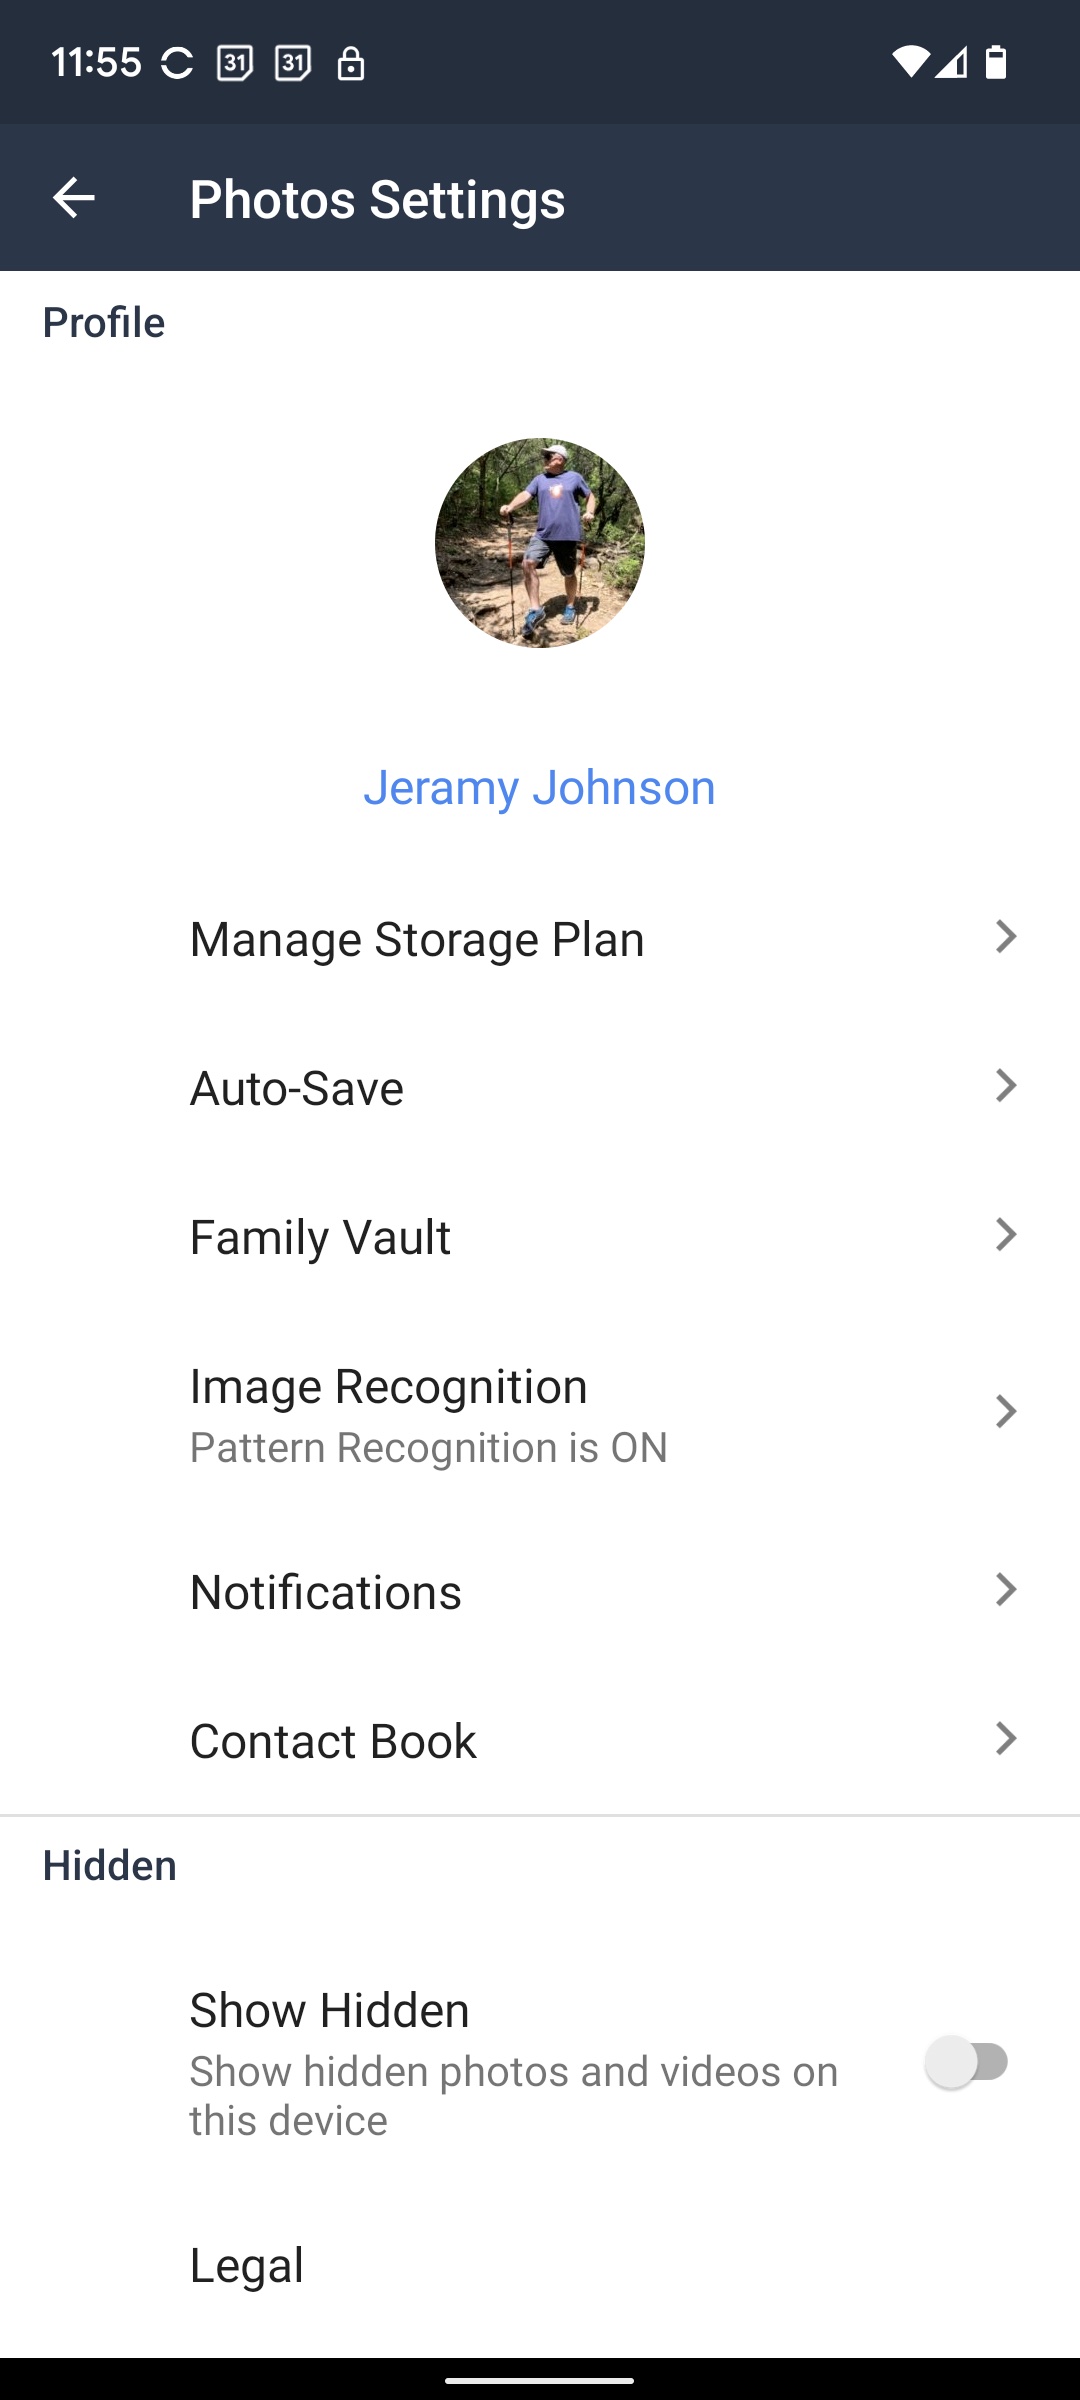 Configurações de perfil do aplicativo móvel Amazon Photos